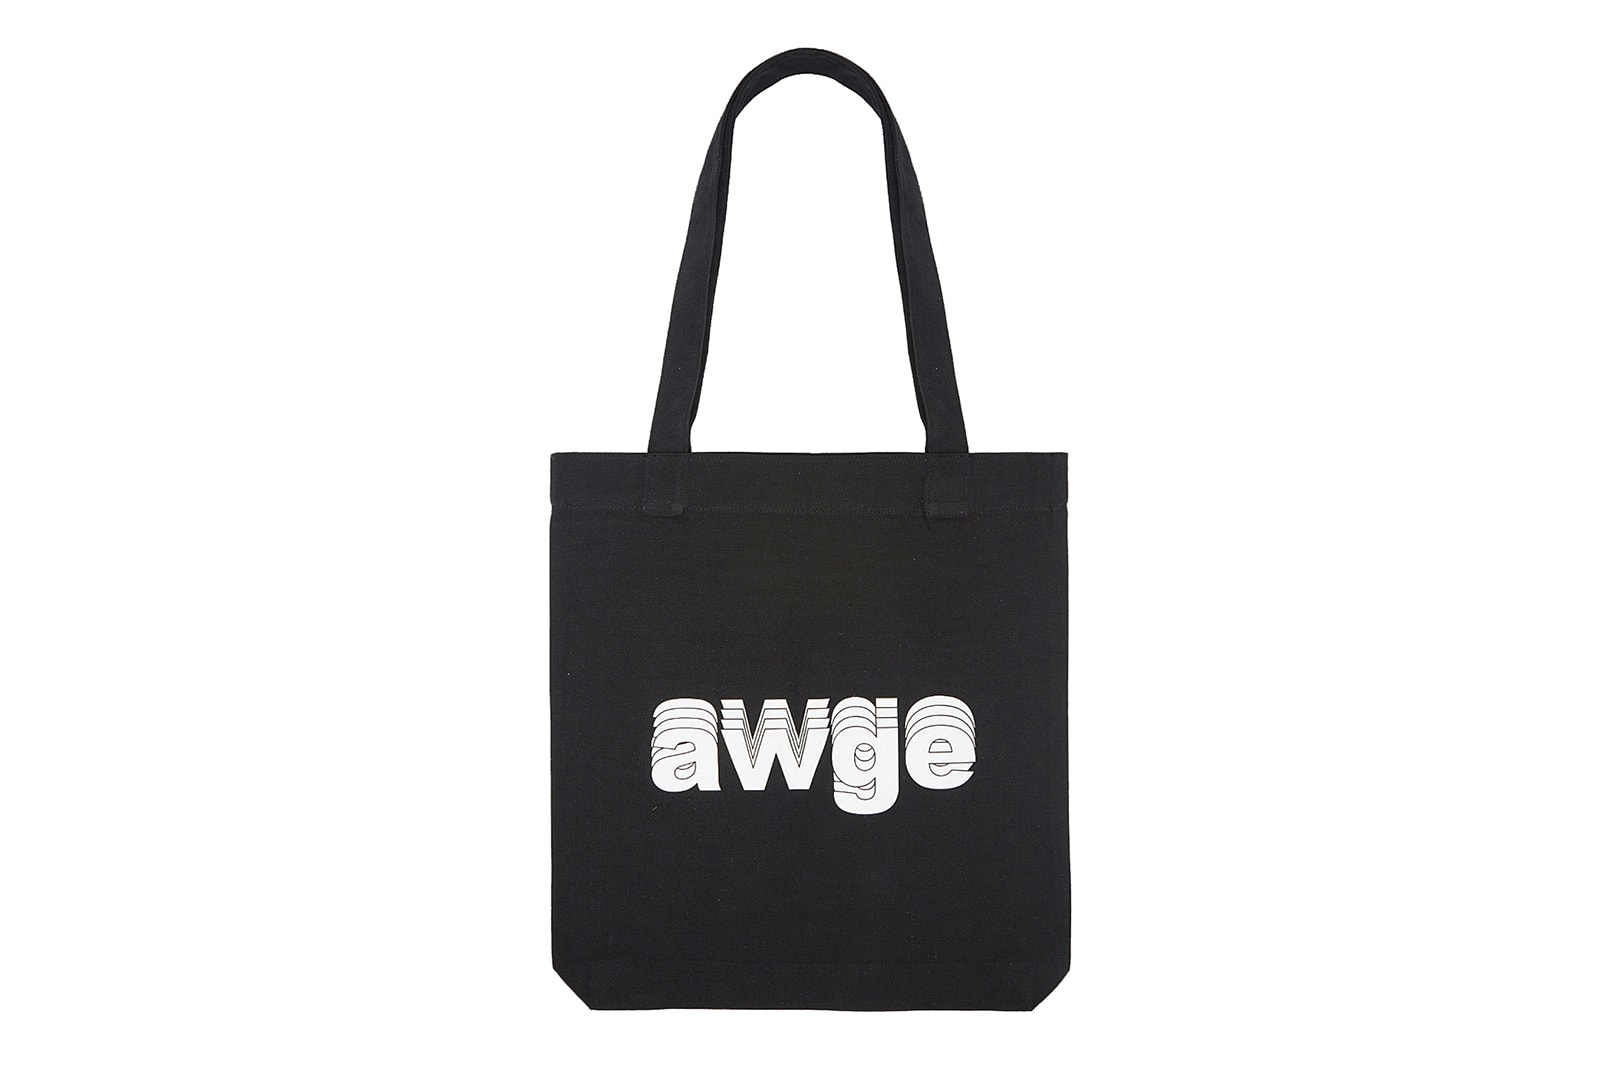 AWGE Selfridges Bodega Items Released Online